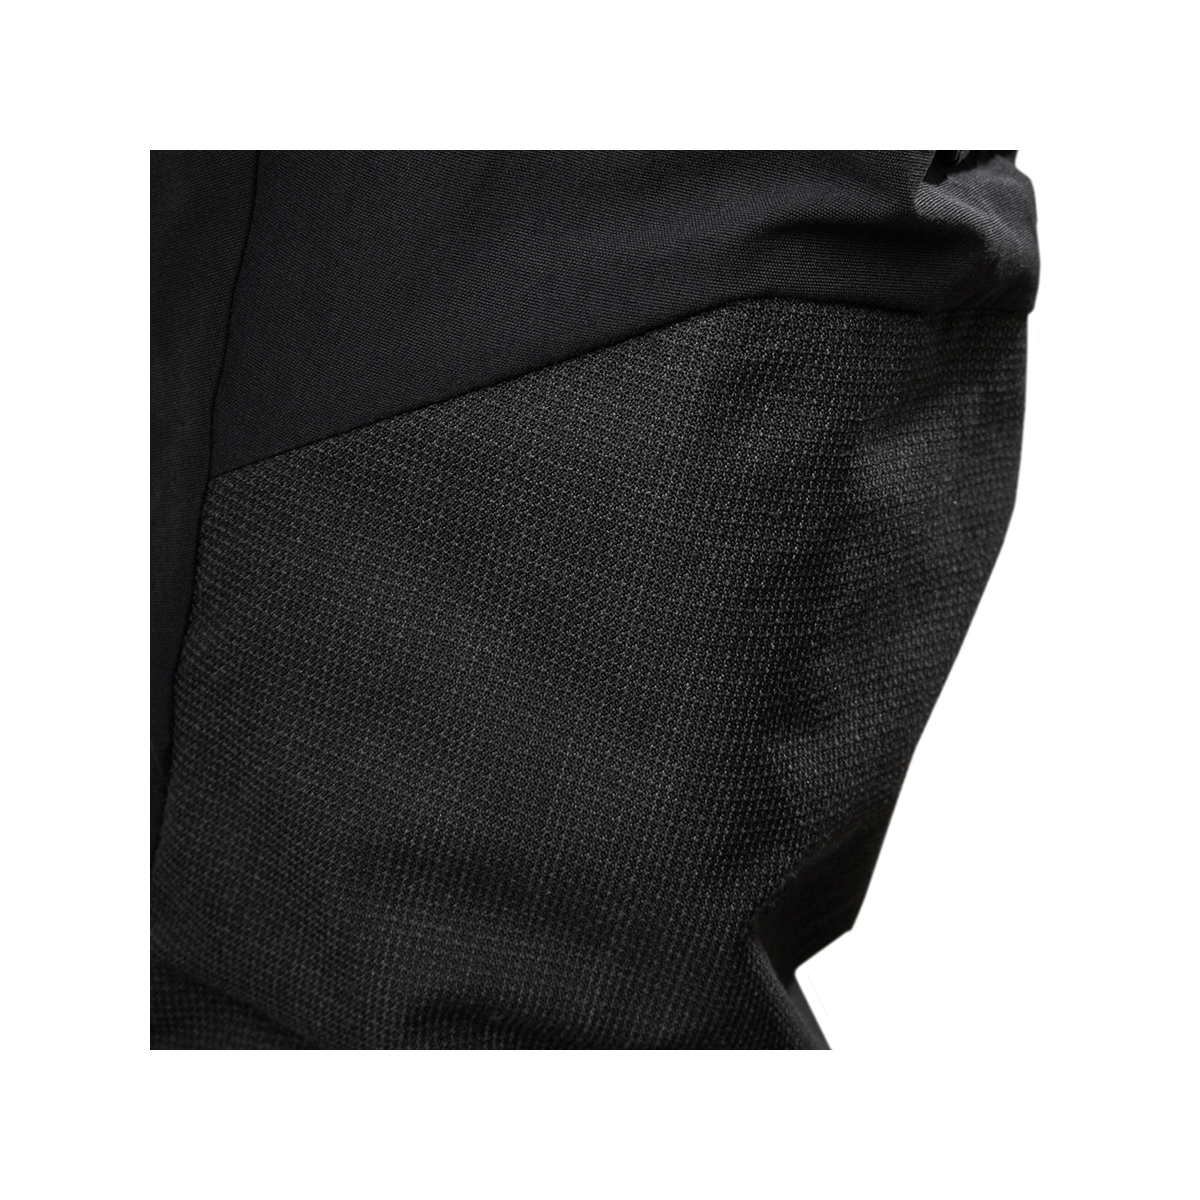 Musto Evolution Performance pantalon de voile 2.0 homme noir, taille 30